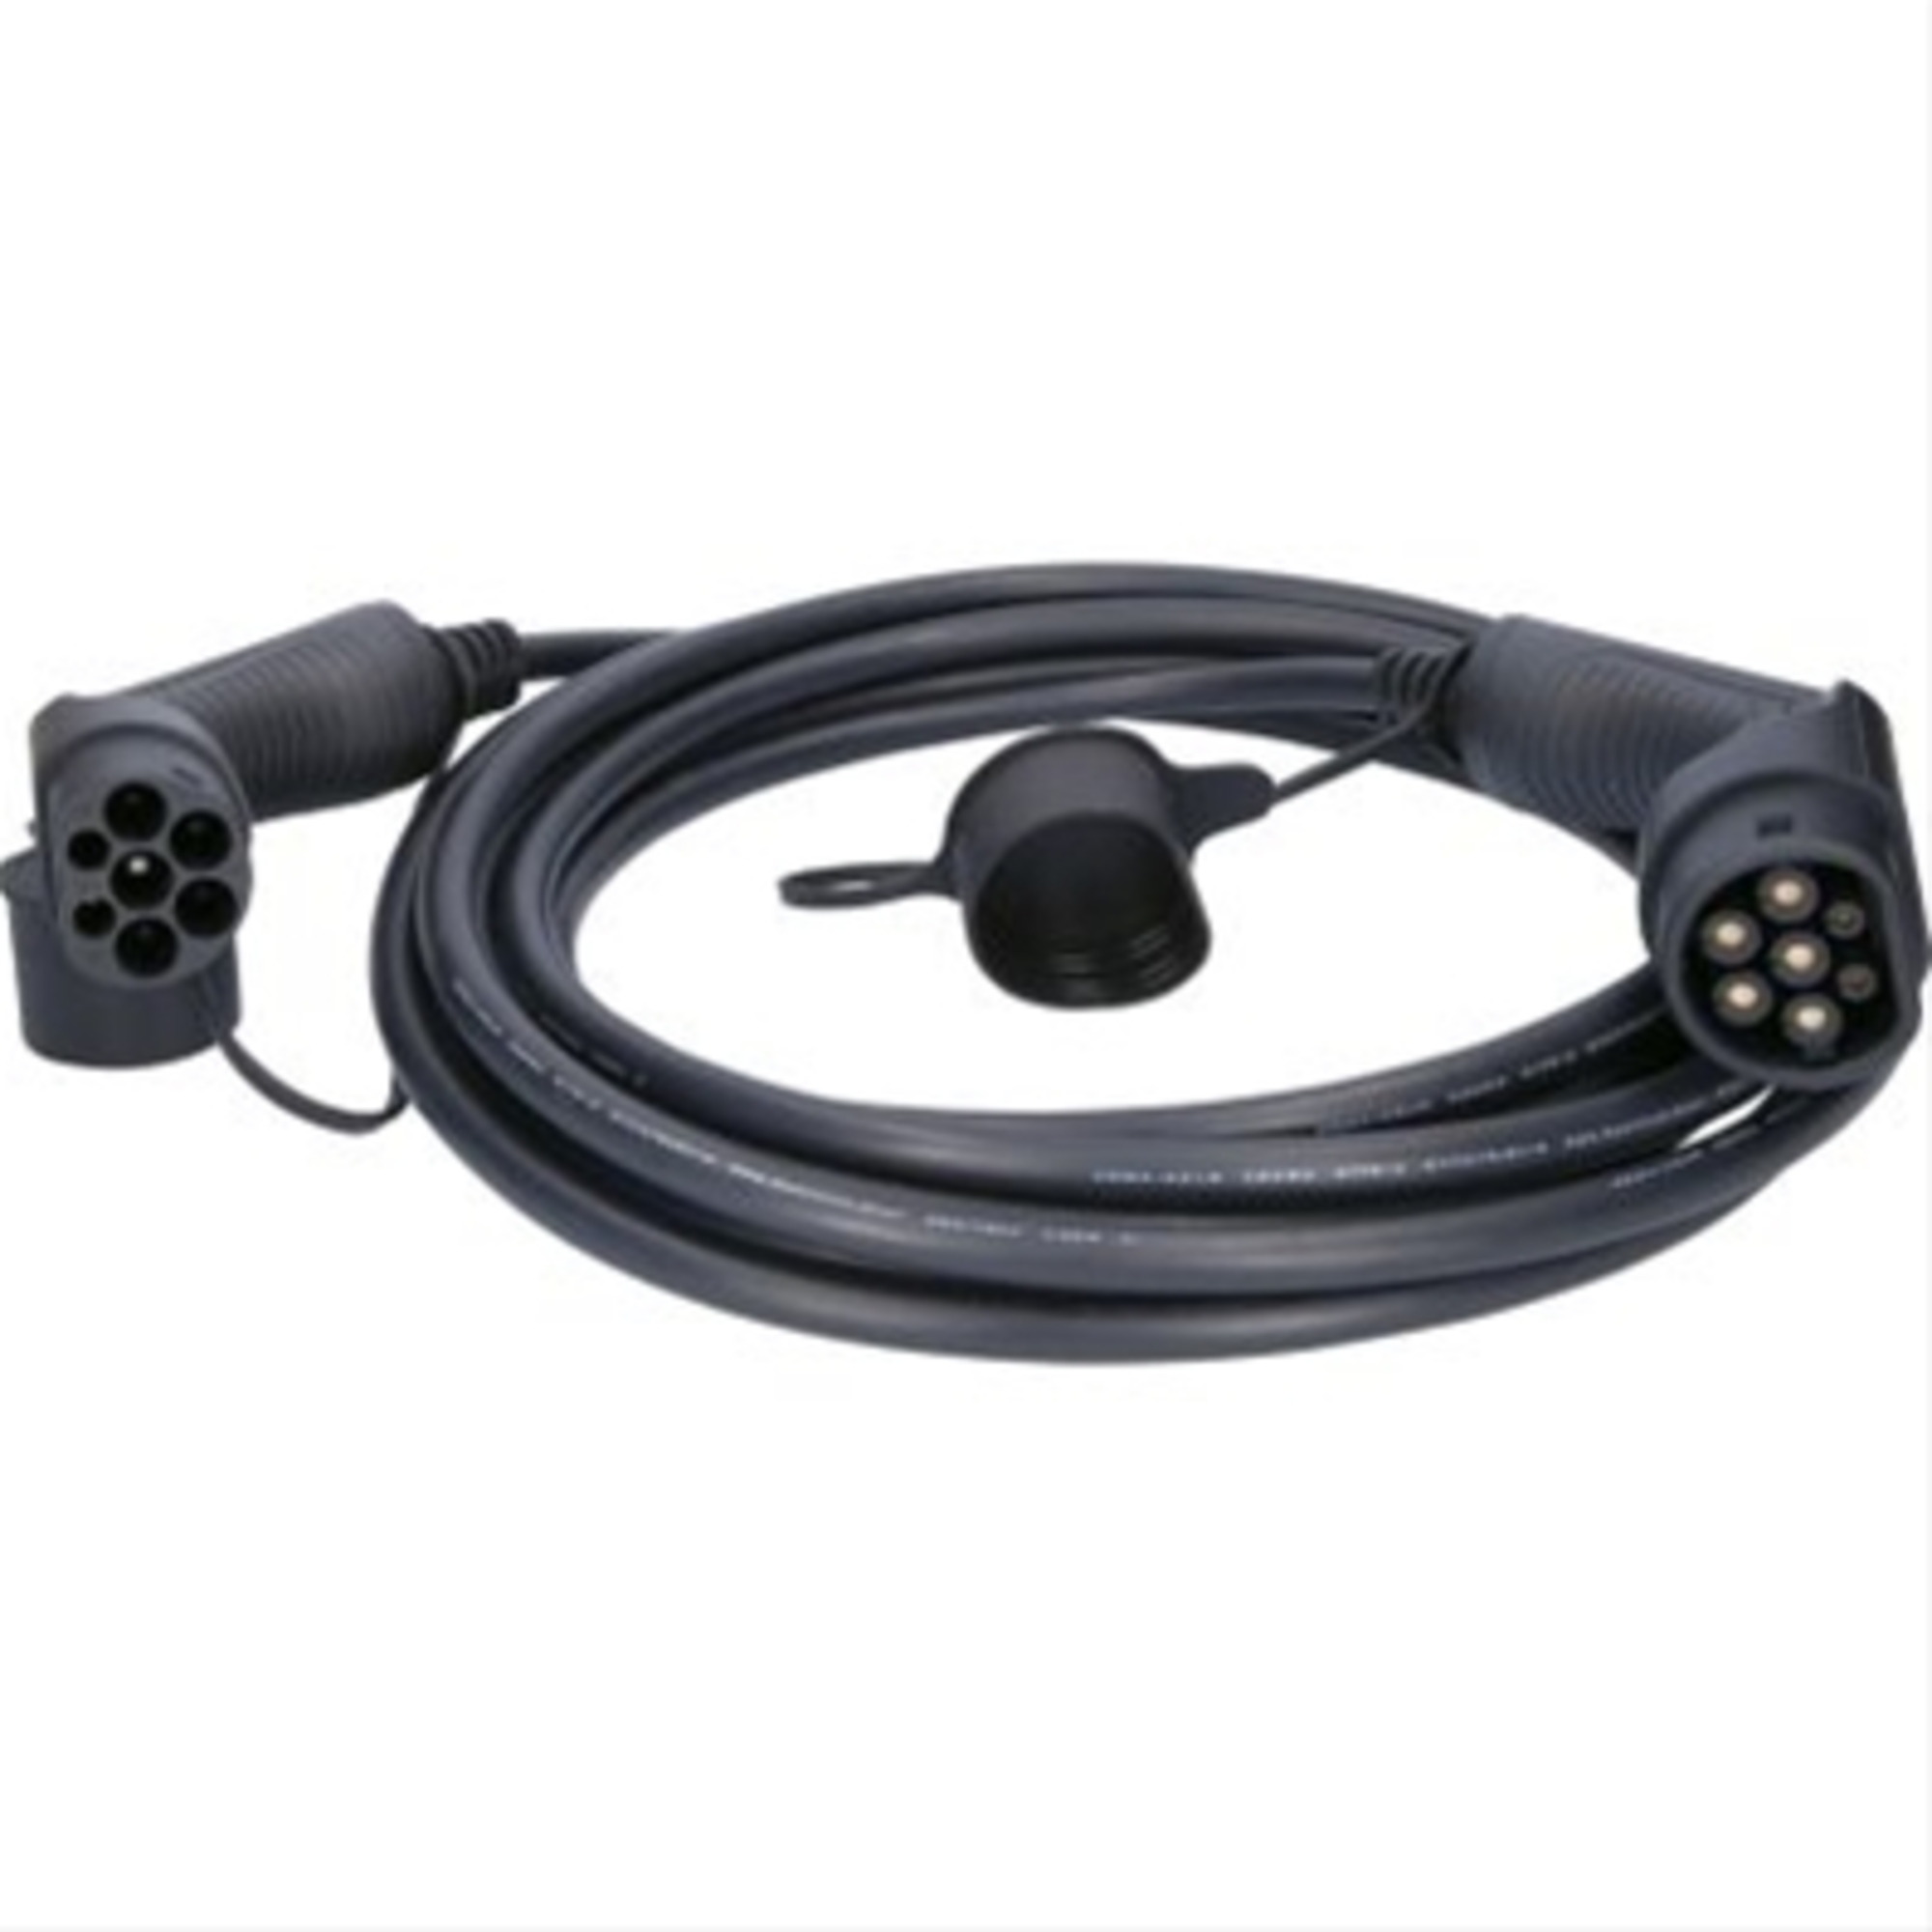 Cablu de incarcare drept typ 2 / typ 2 11 kw 400 v 16 a 8m-efuturo ks-tools